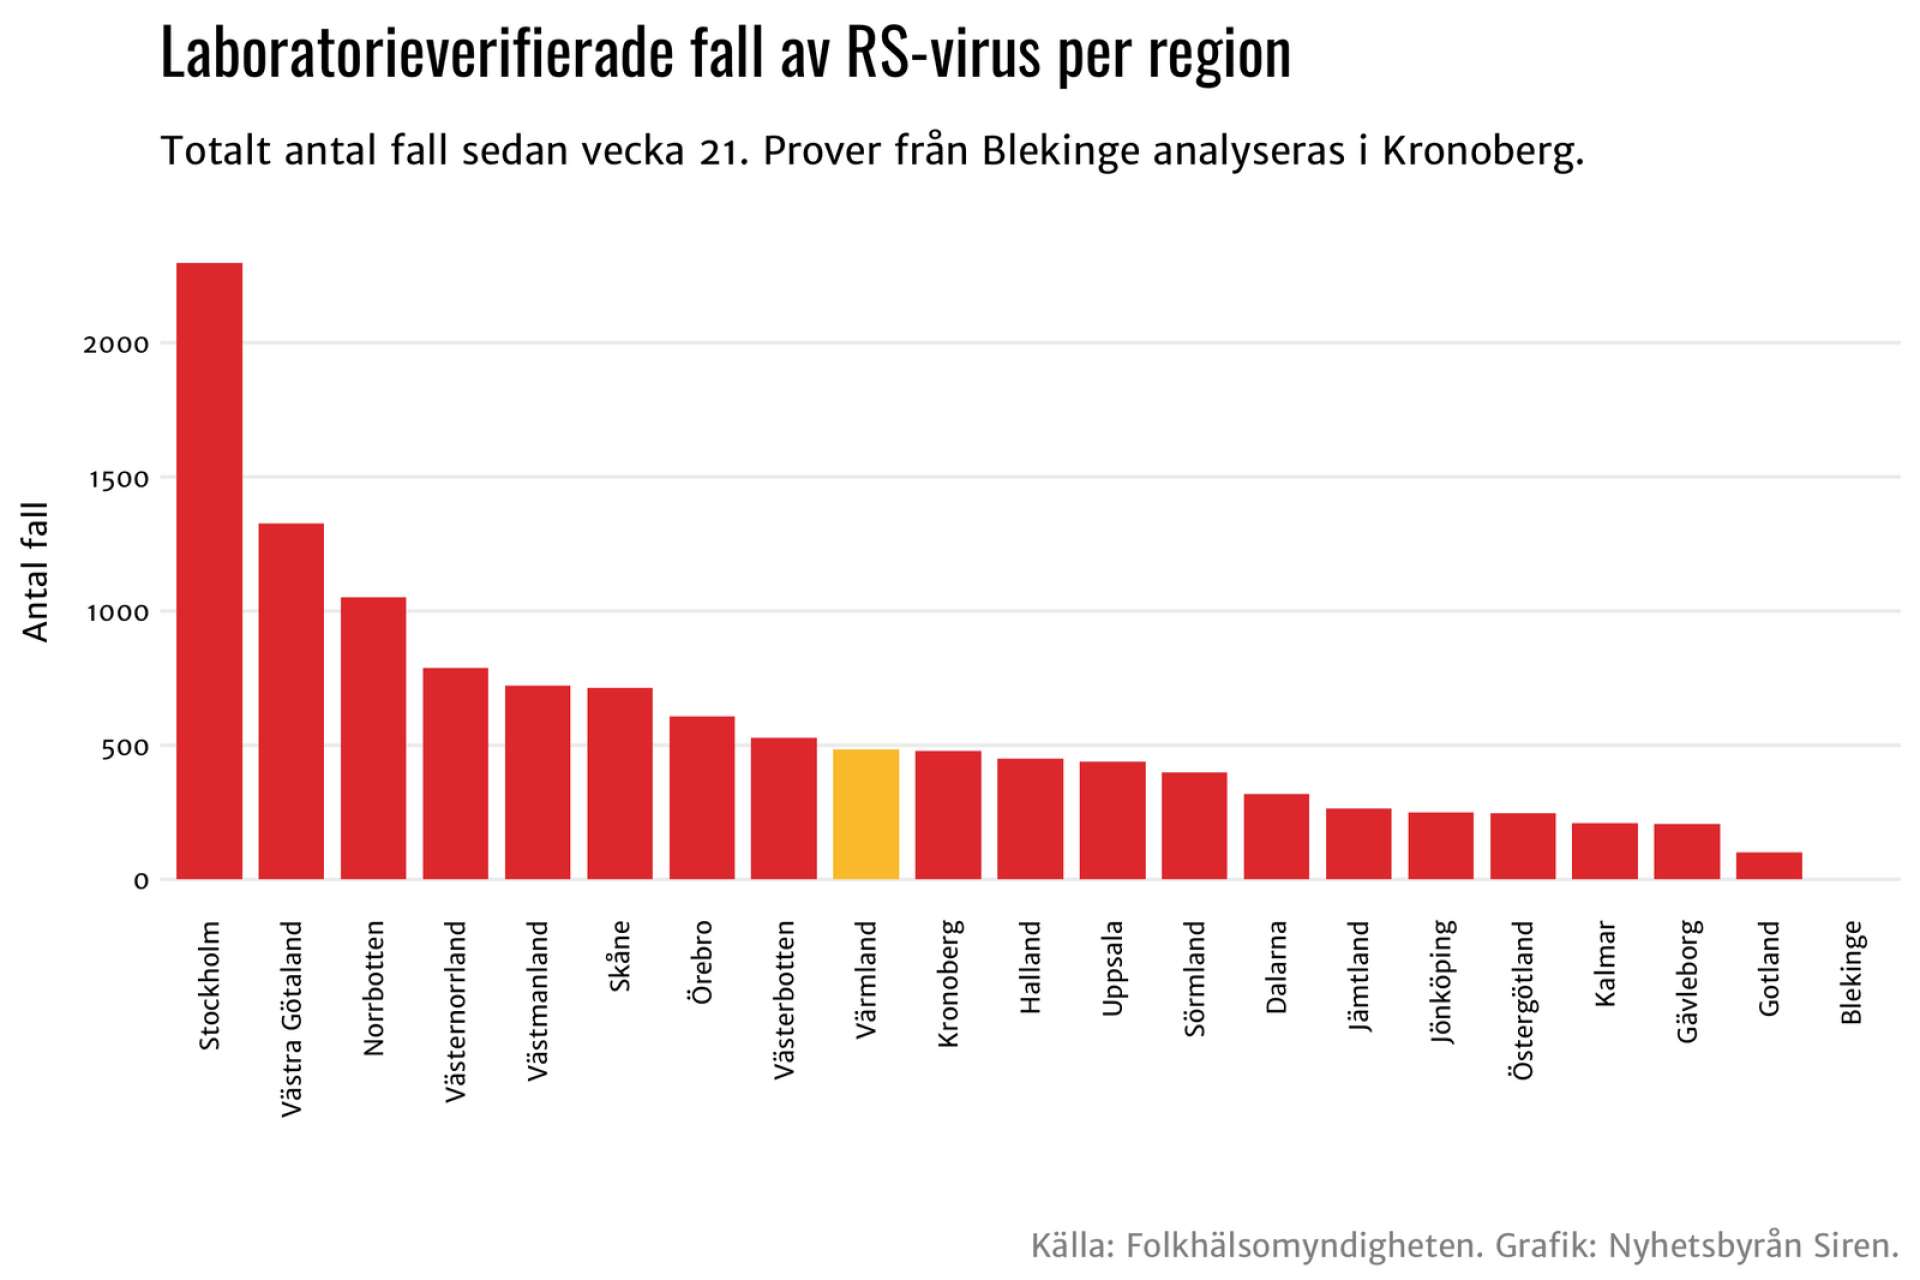 484 fall av RS-viruset har konstaterats i Värmland.